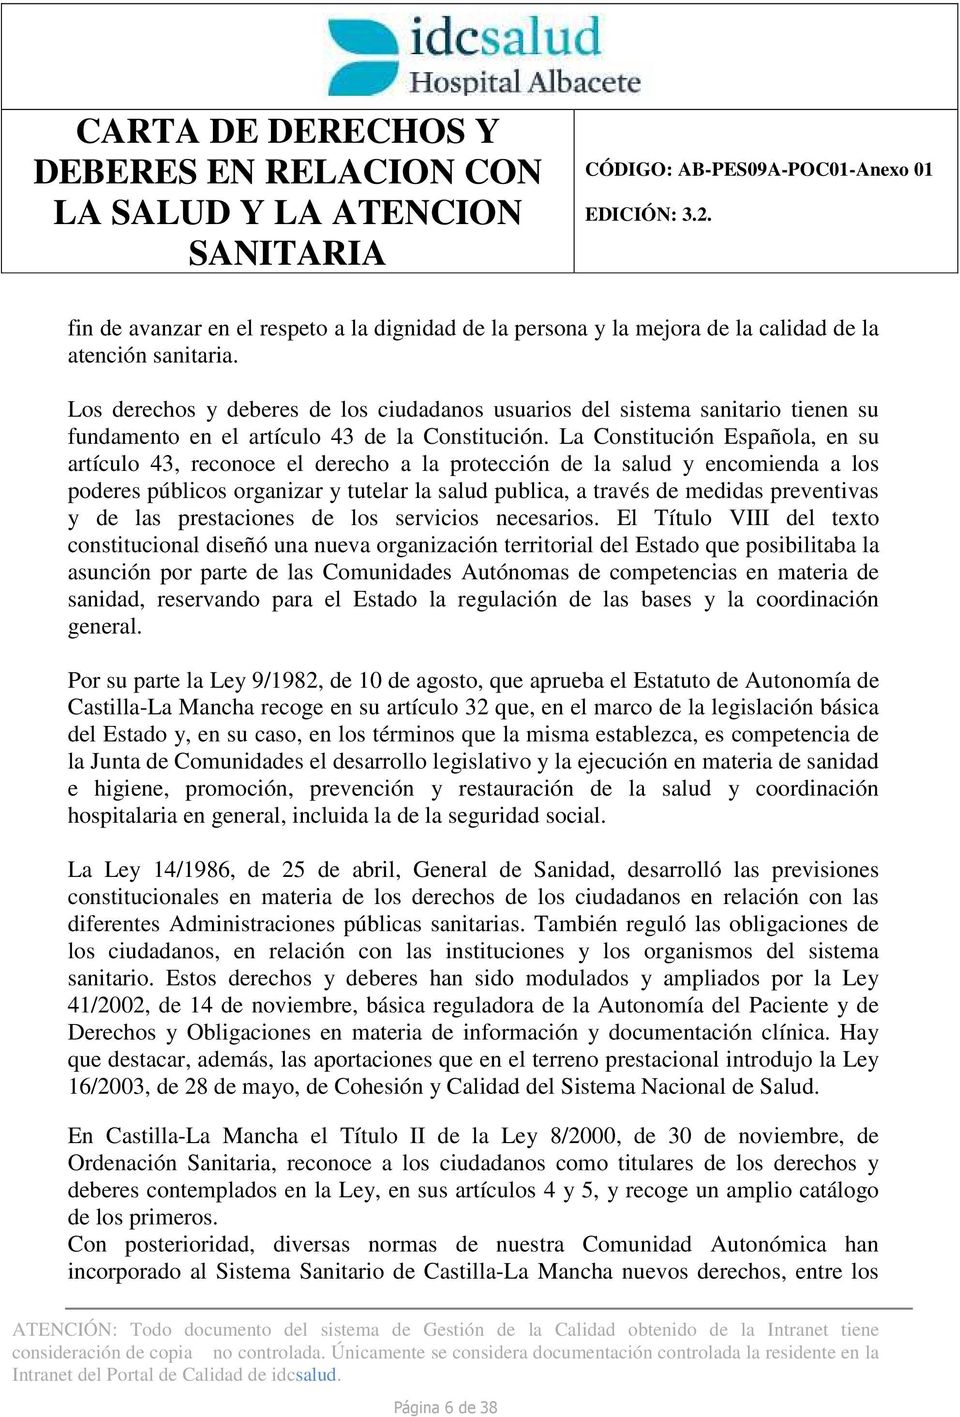 La Constitución Española, en su artículo 43, reconoce el derecho a la protección de la salud y encomienda a los poderes públicos organizar y tutelar la salud publica, a través de medidas preventivas